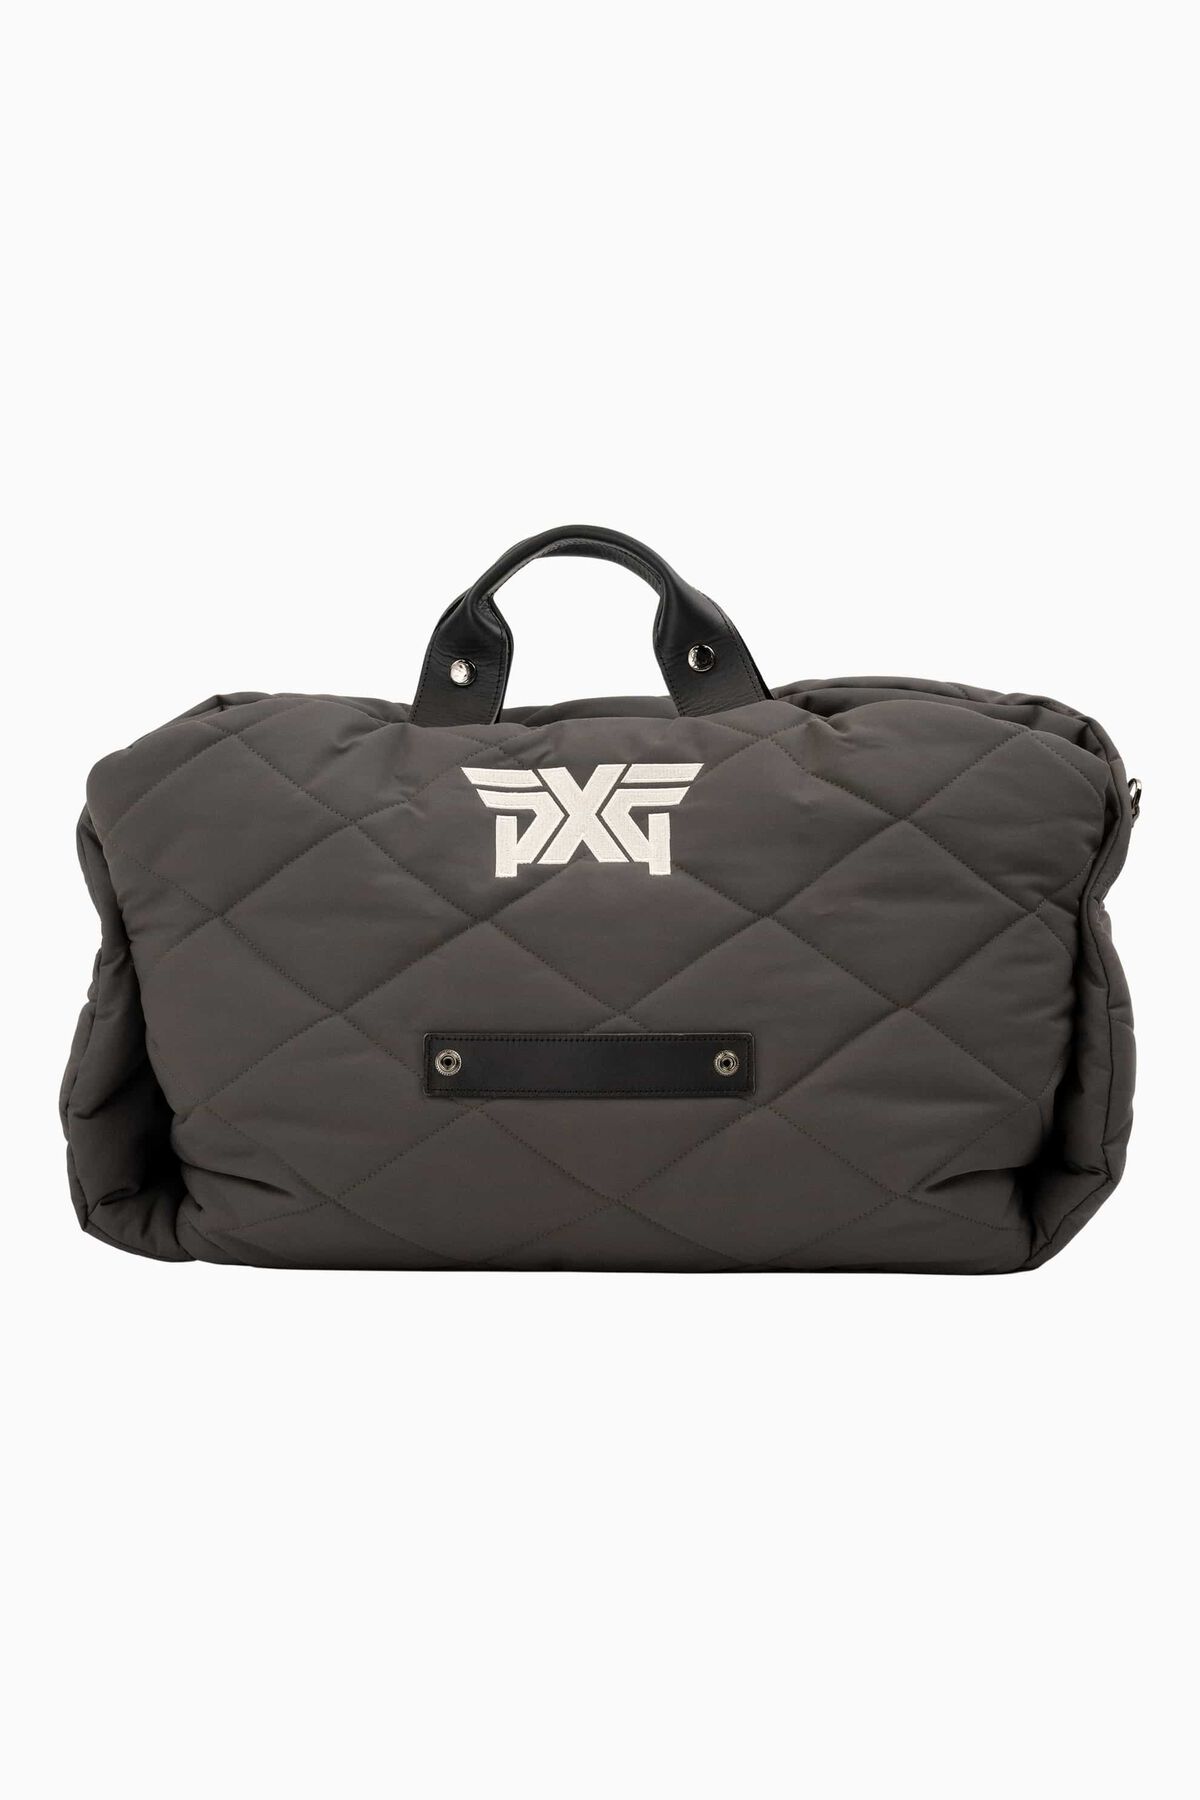 PXG Convertible Bag Car Seat 